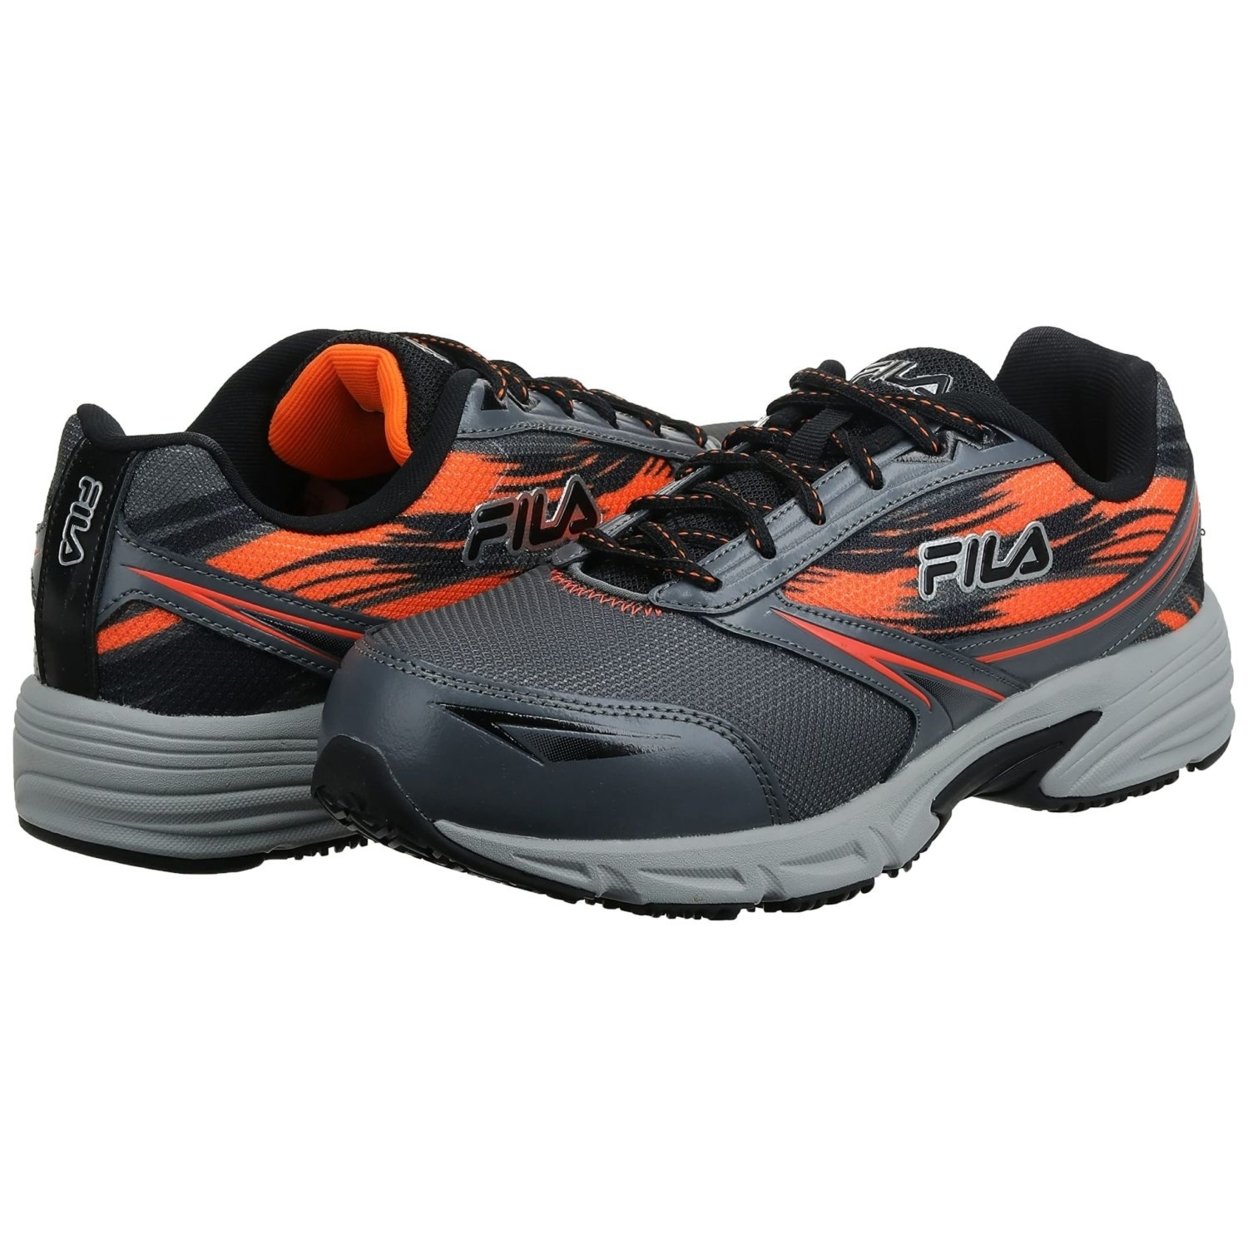 Fila Menâs Memory Meiera 2 Slip Resistant And Composite Toe Work Shoe CSRK/BLK/VORN - Castlerock/Black/Vibrant Orange, 11